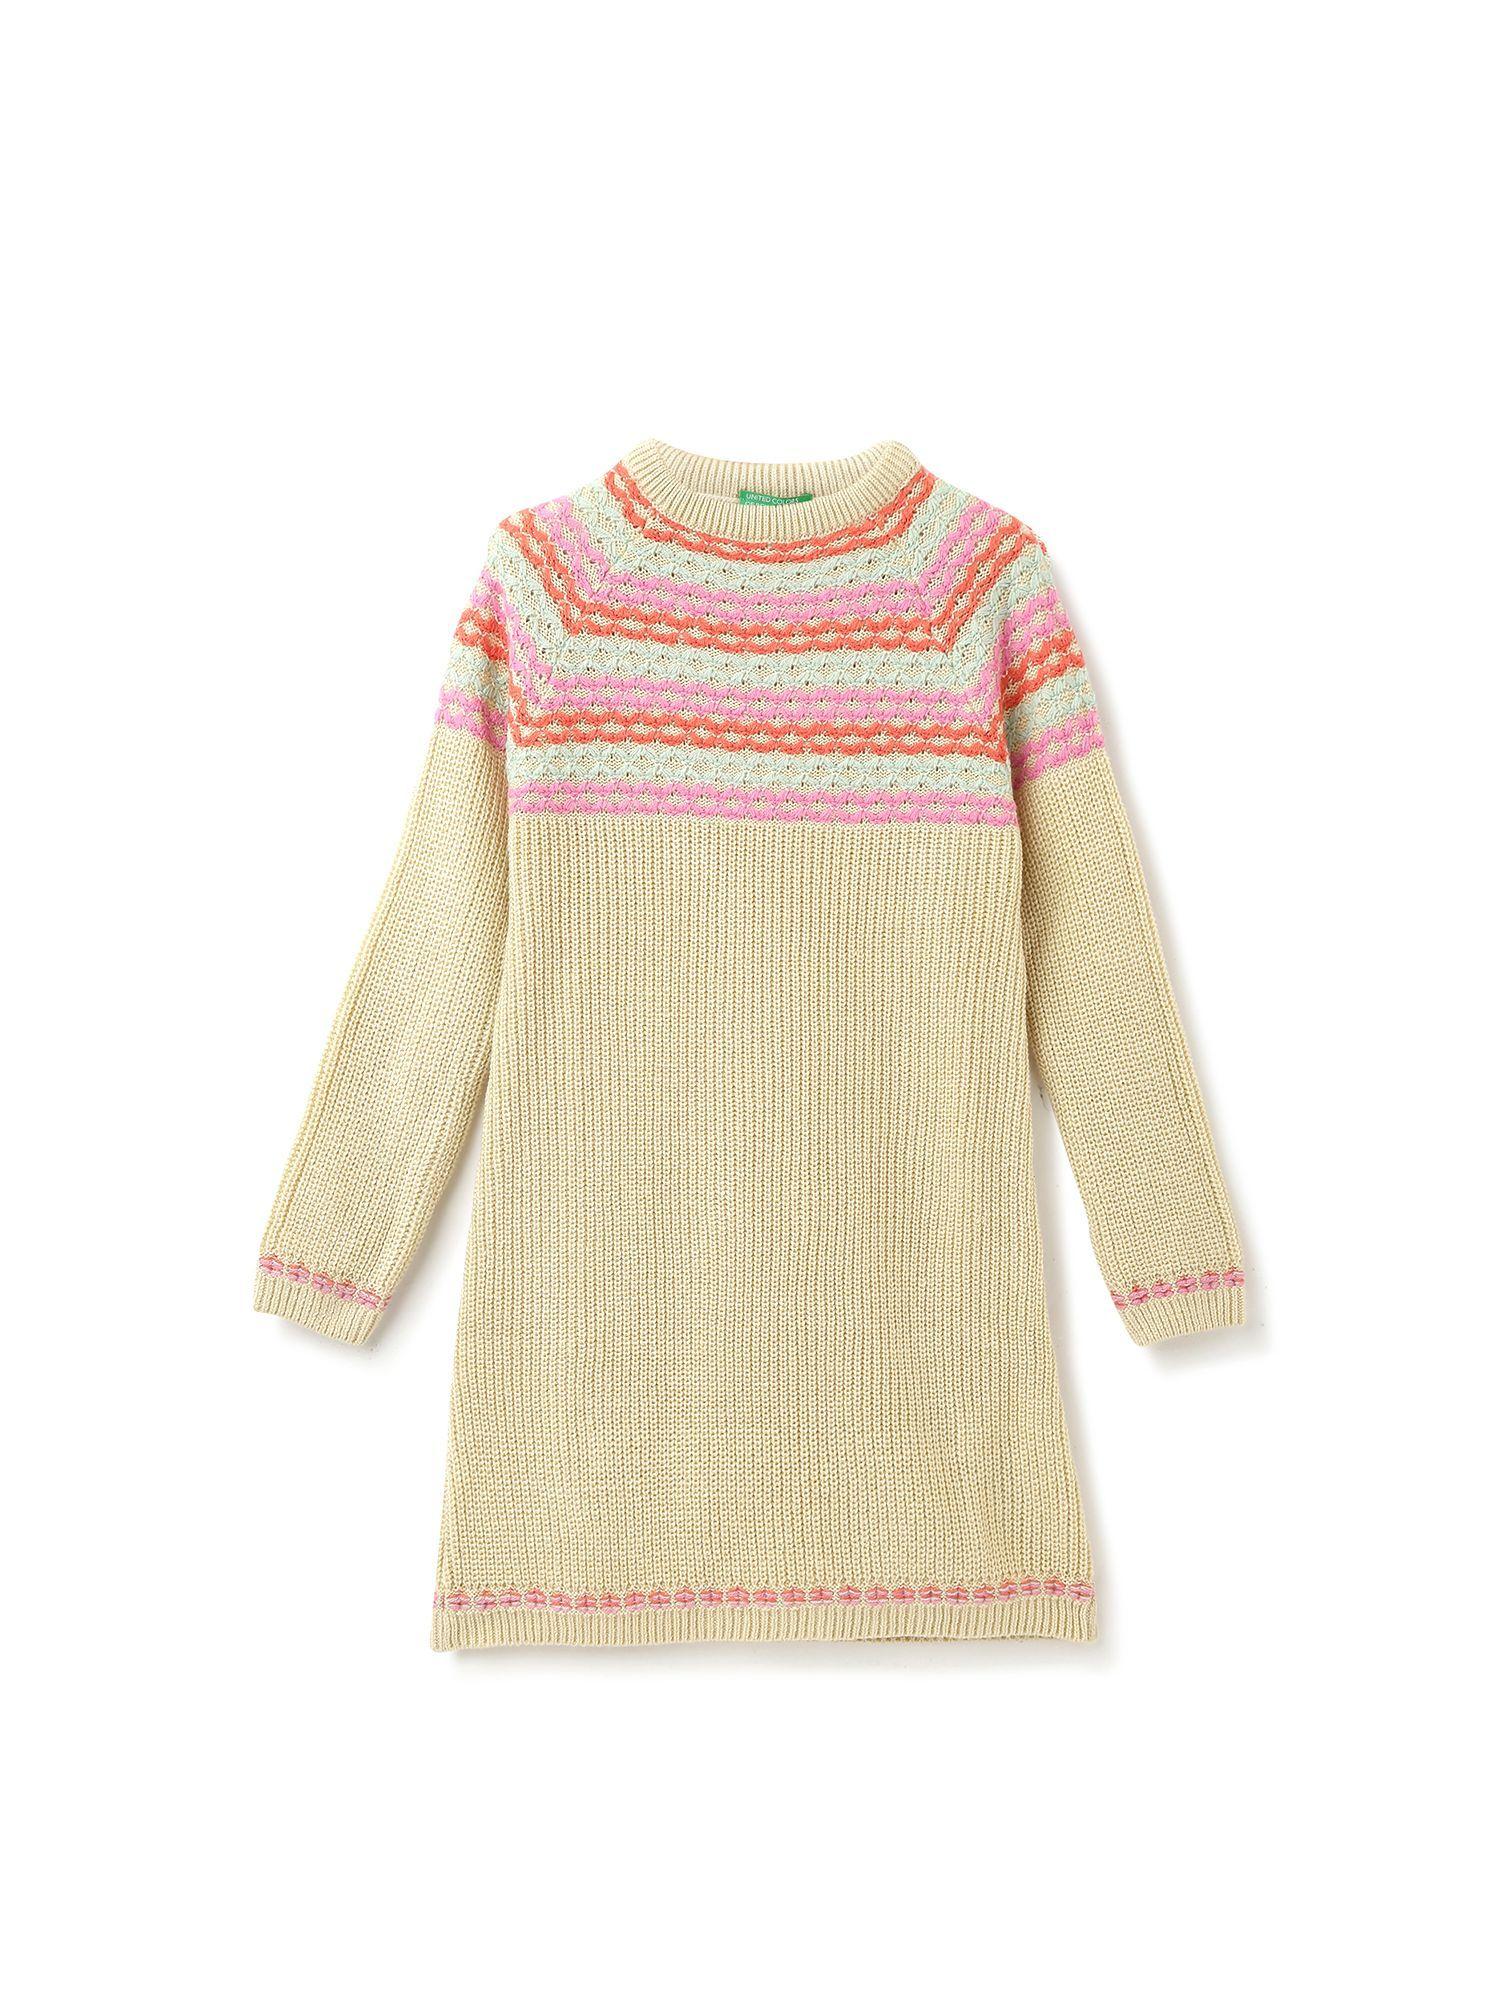 girls-beige-knitted-round-neck-sweater